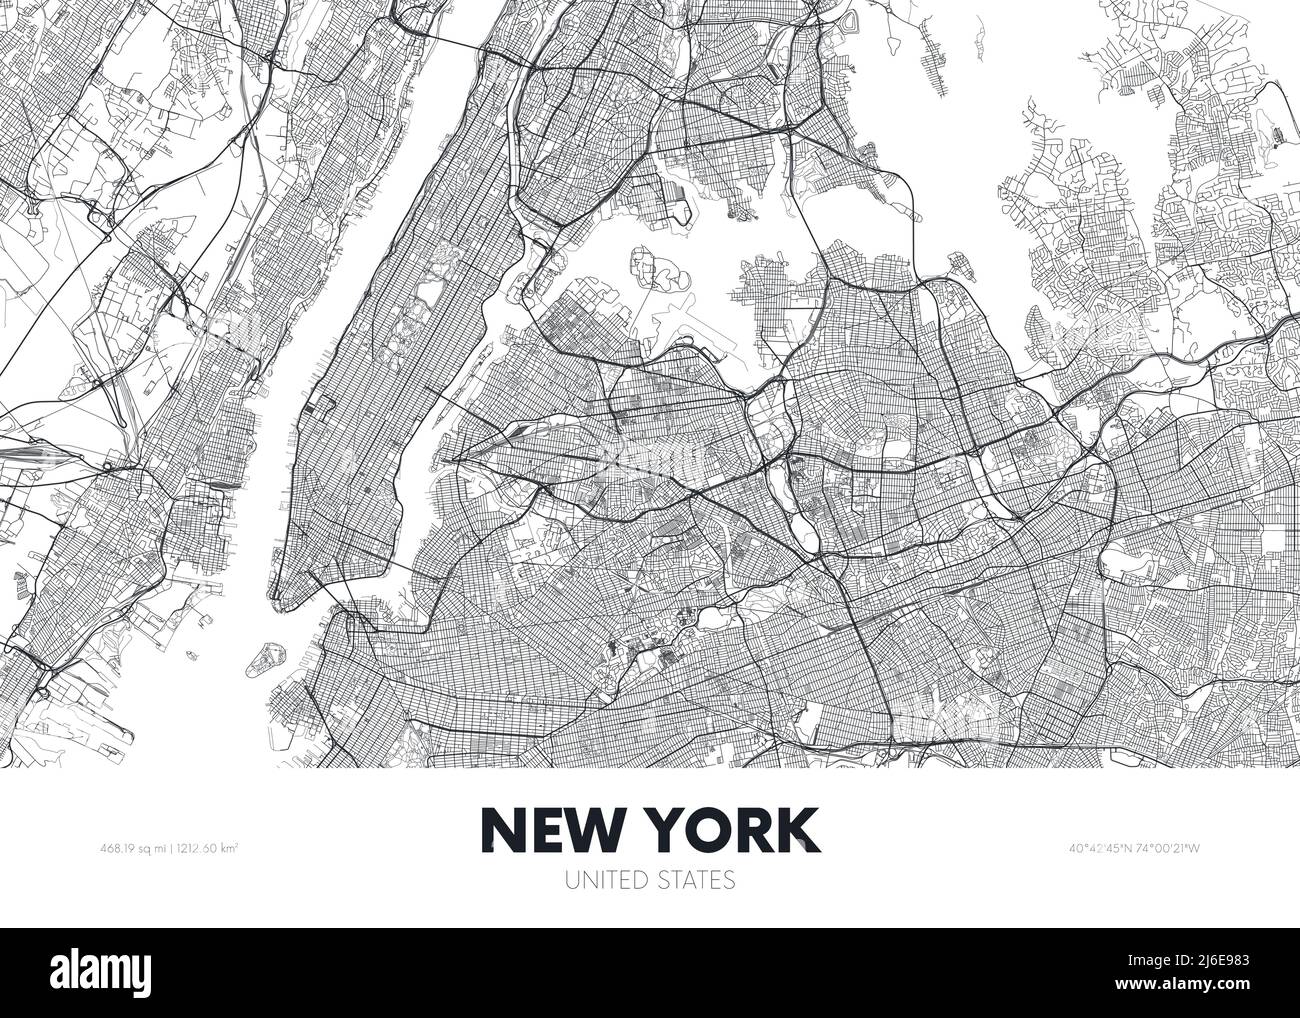 Plan de la ville New York USA, affiche de voyage Plan urbain détaillé, illustration vectorielle Illustration de Vecteur